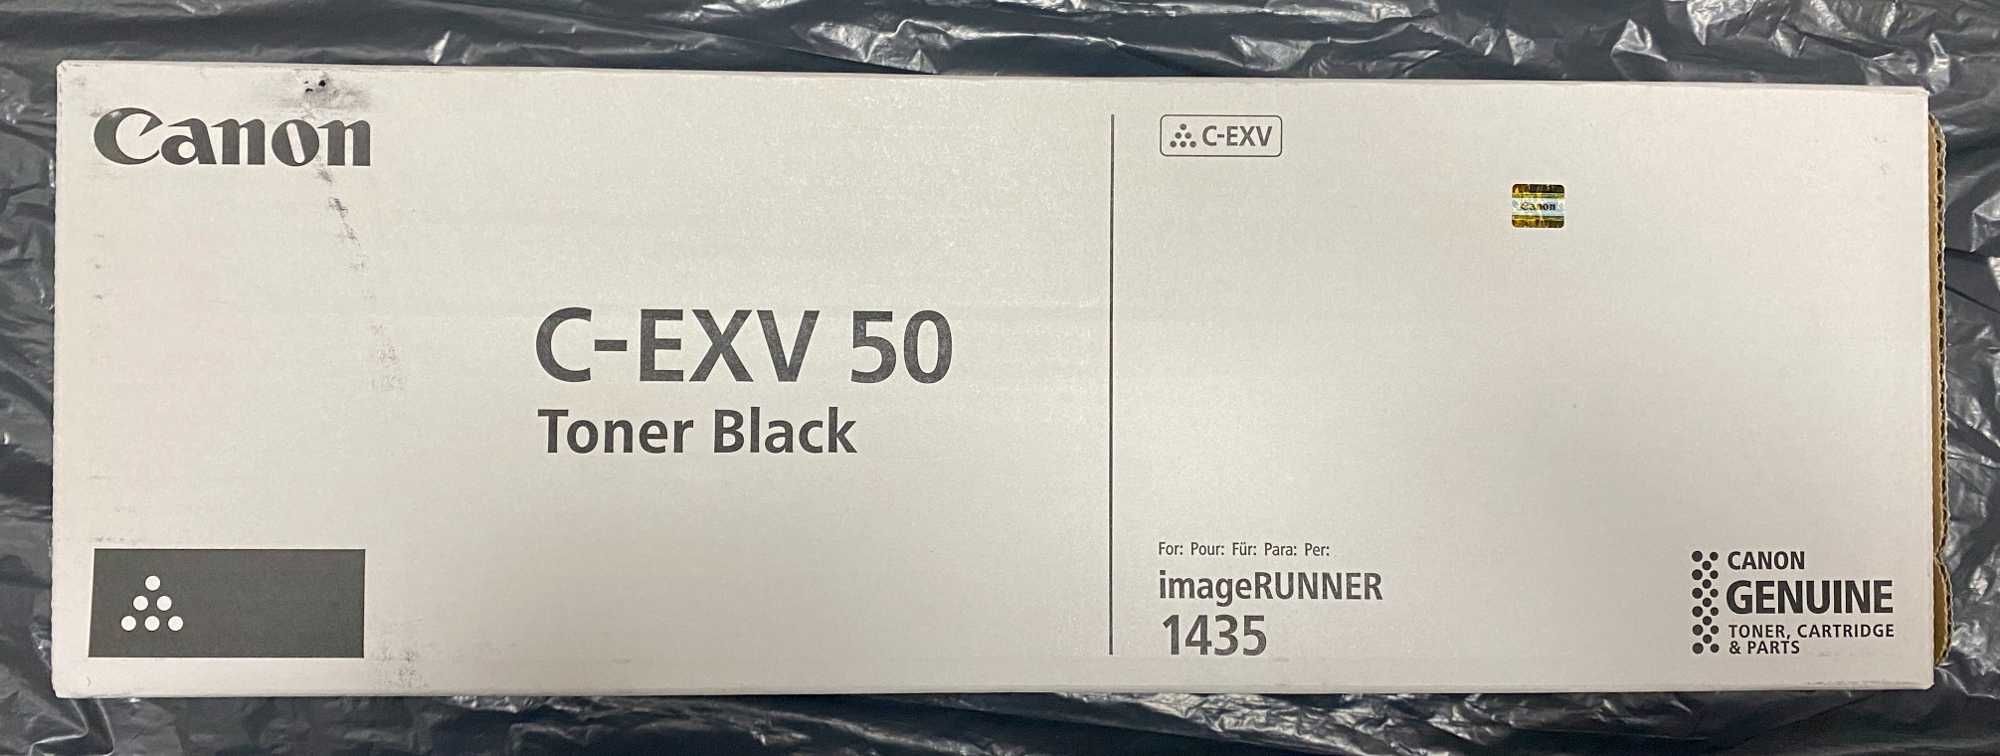 Toner Canon C-EXV 50 iR1435